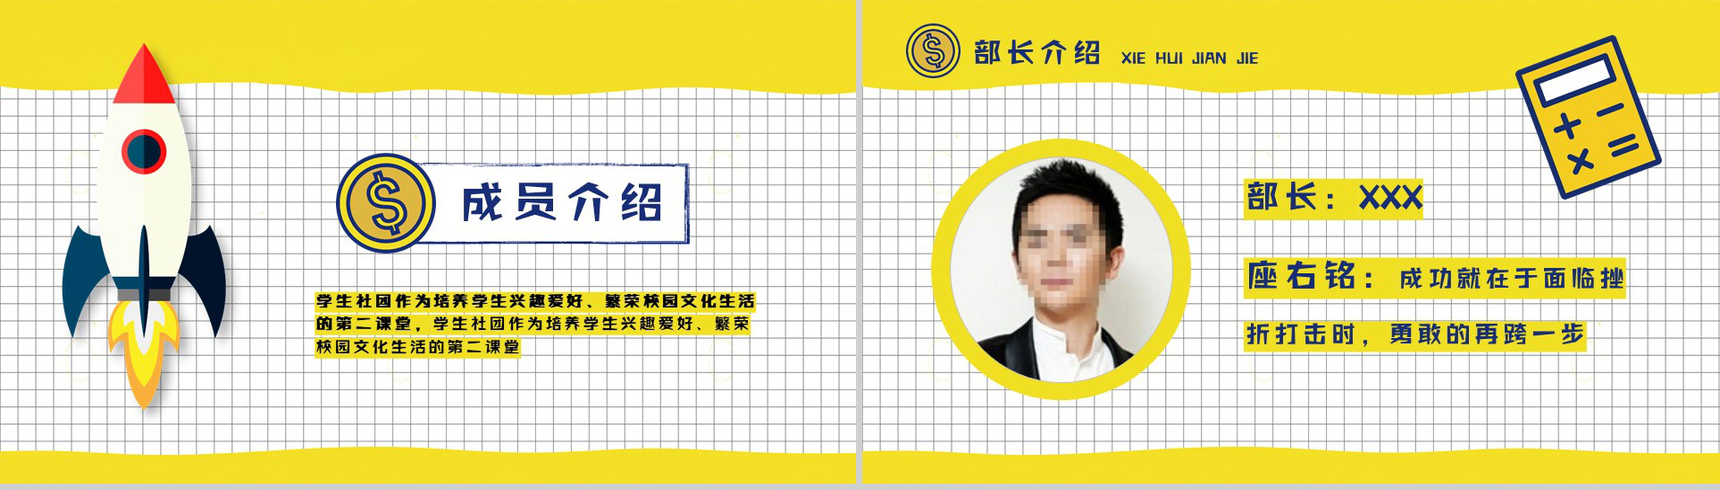 黄色扁平化卡通商务社团招新计划活动方案招聘PPT模板-4